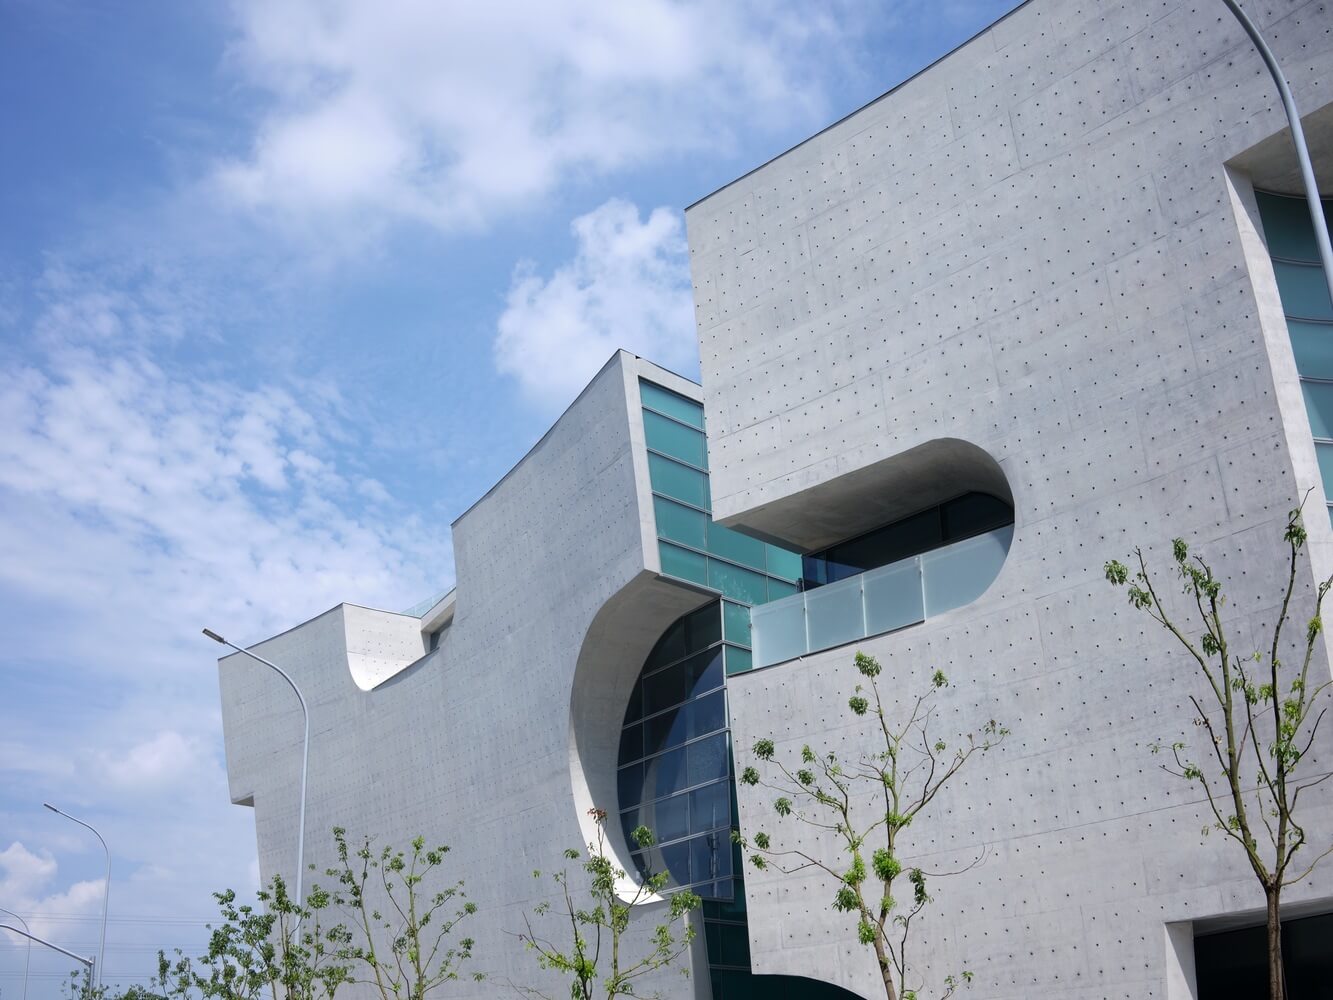 facade of a concrete building